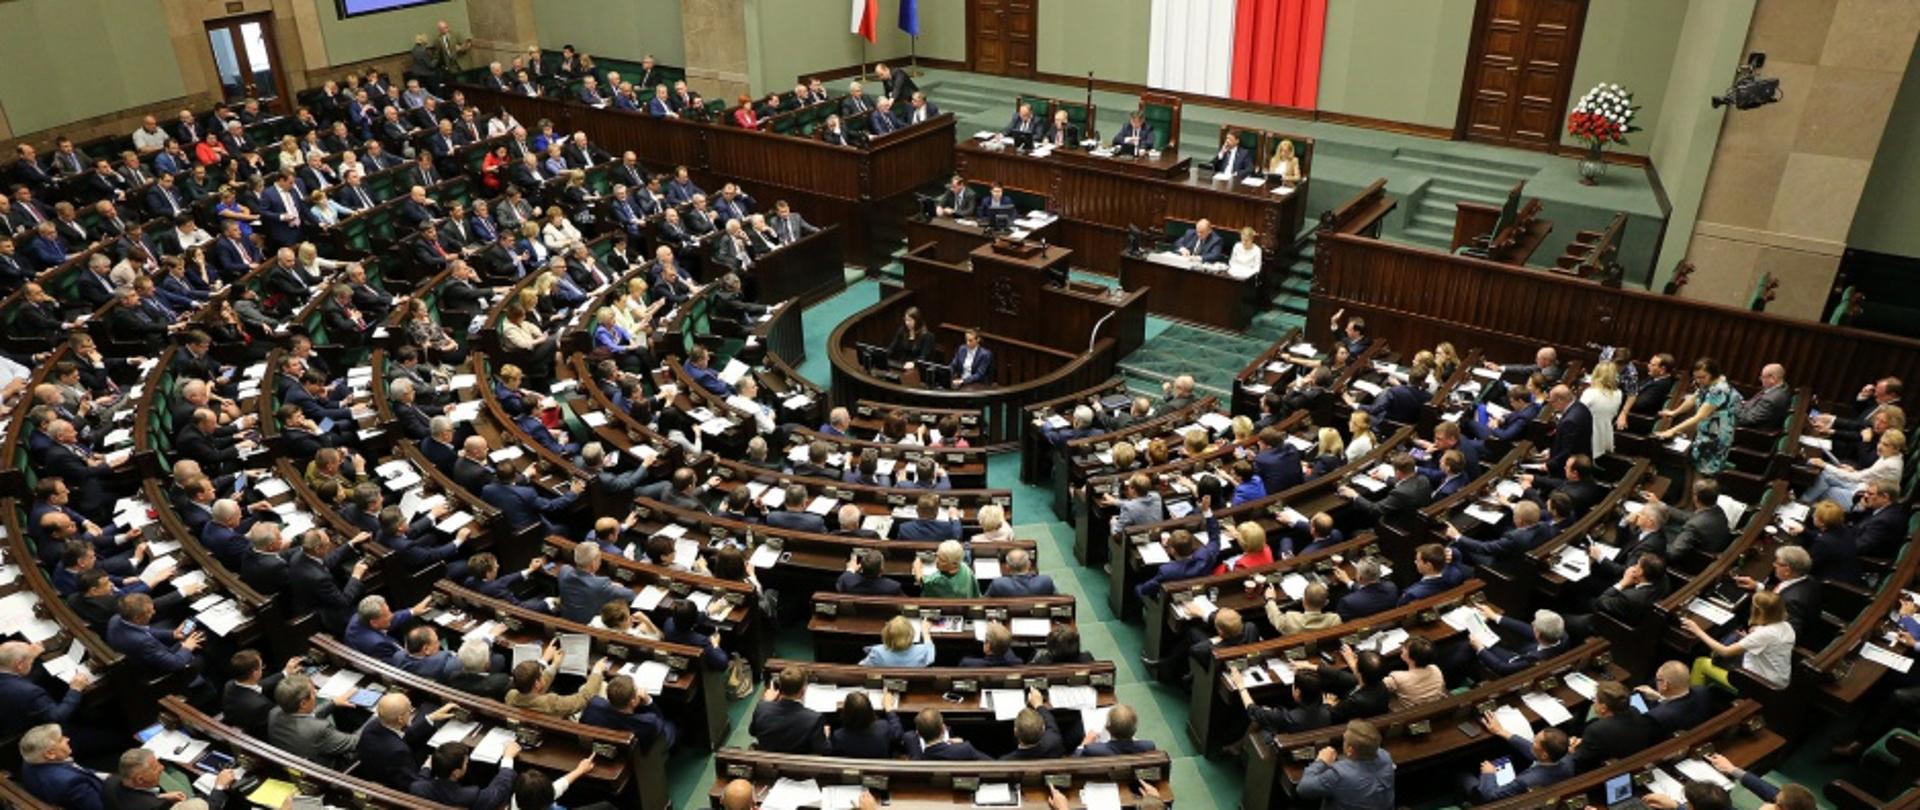 Obrady Sejmu - widok z góry